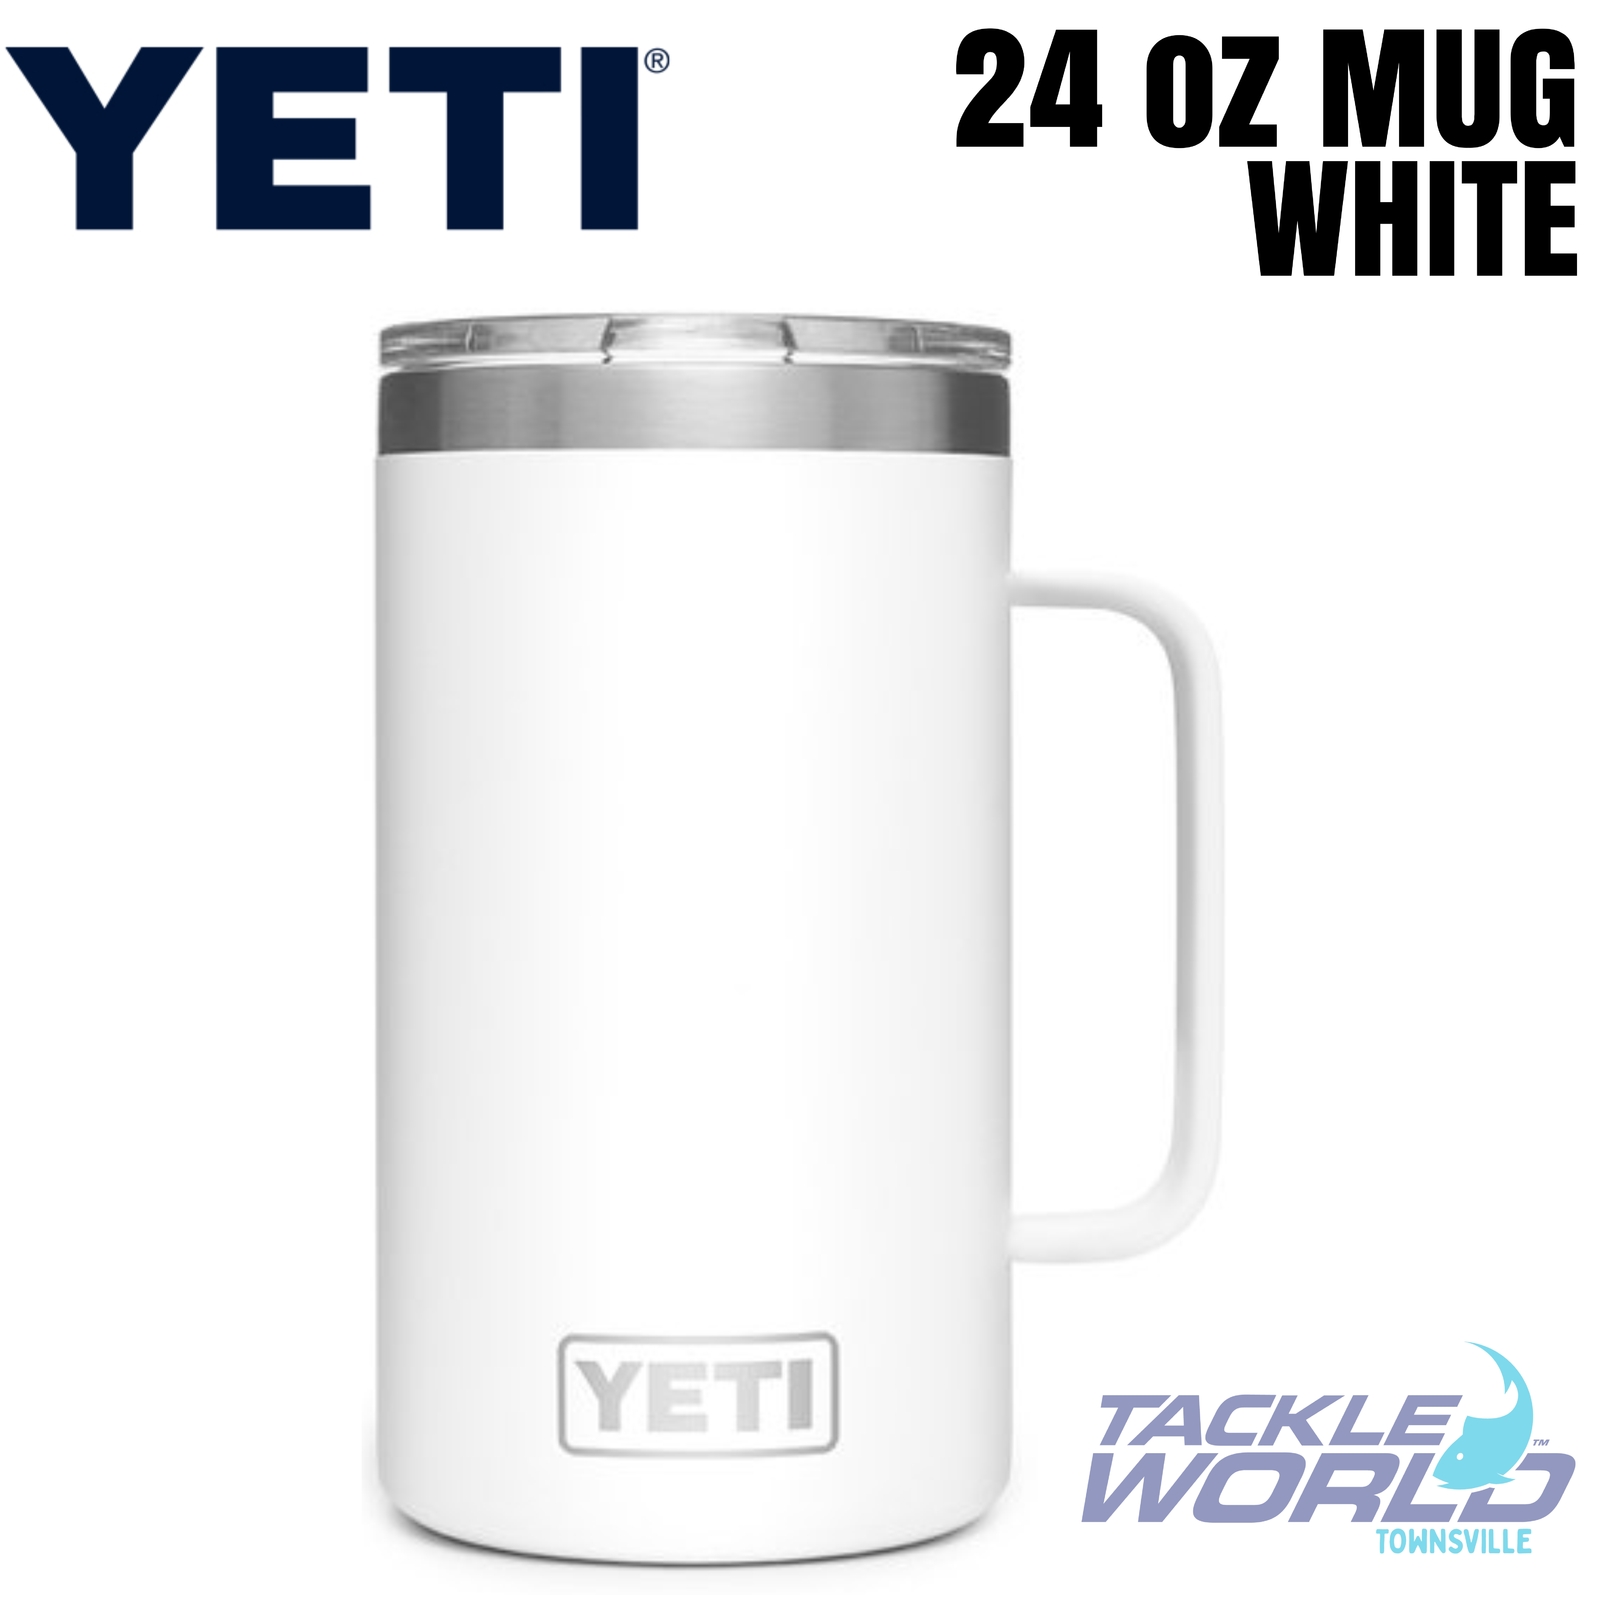 Yeti 24oz Mug (710ml) White with Magsilder Lid